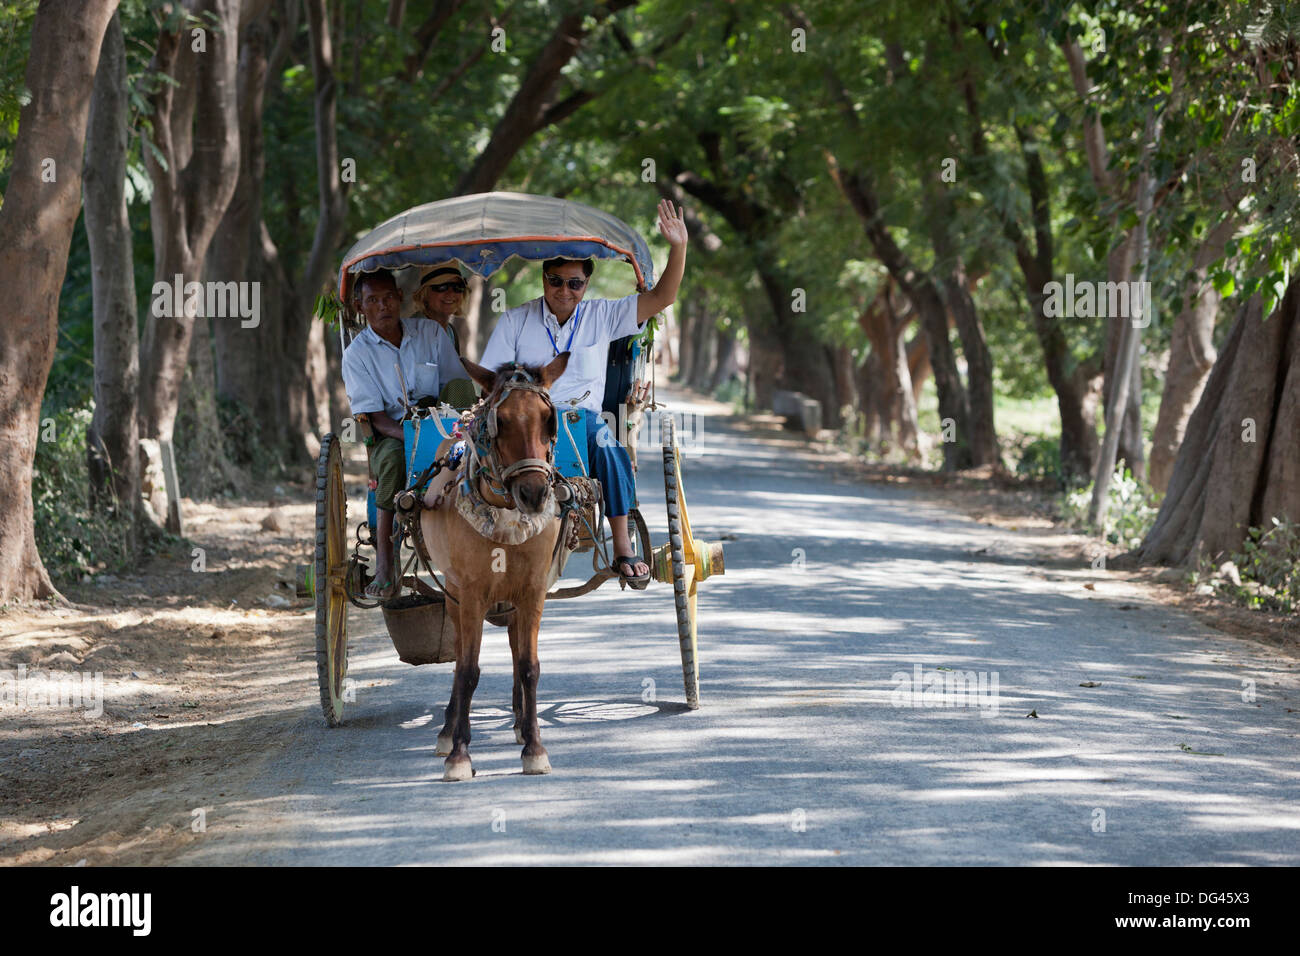 Panier cheval touristique sur les voies, bordée d'Inwa, près de Mandalay, Myanmar (Birmanie), l'Asie Banque D'Images